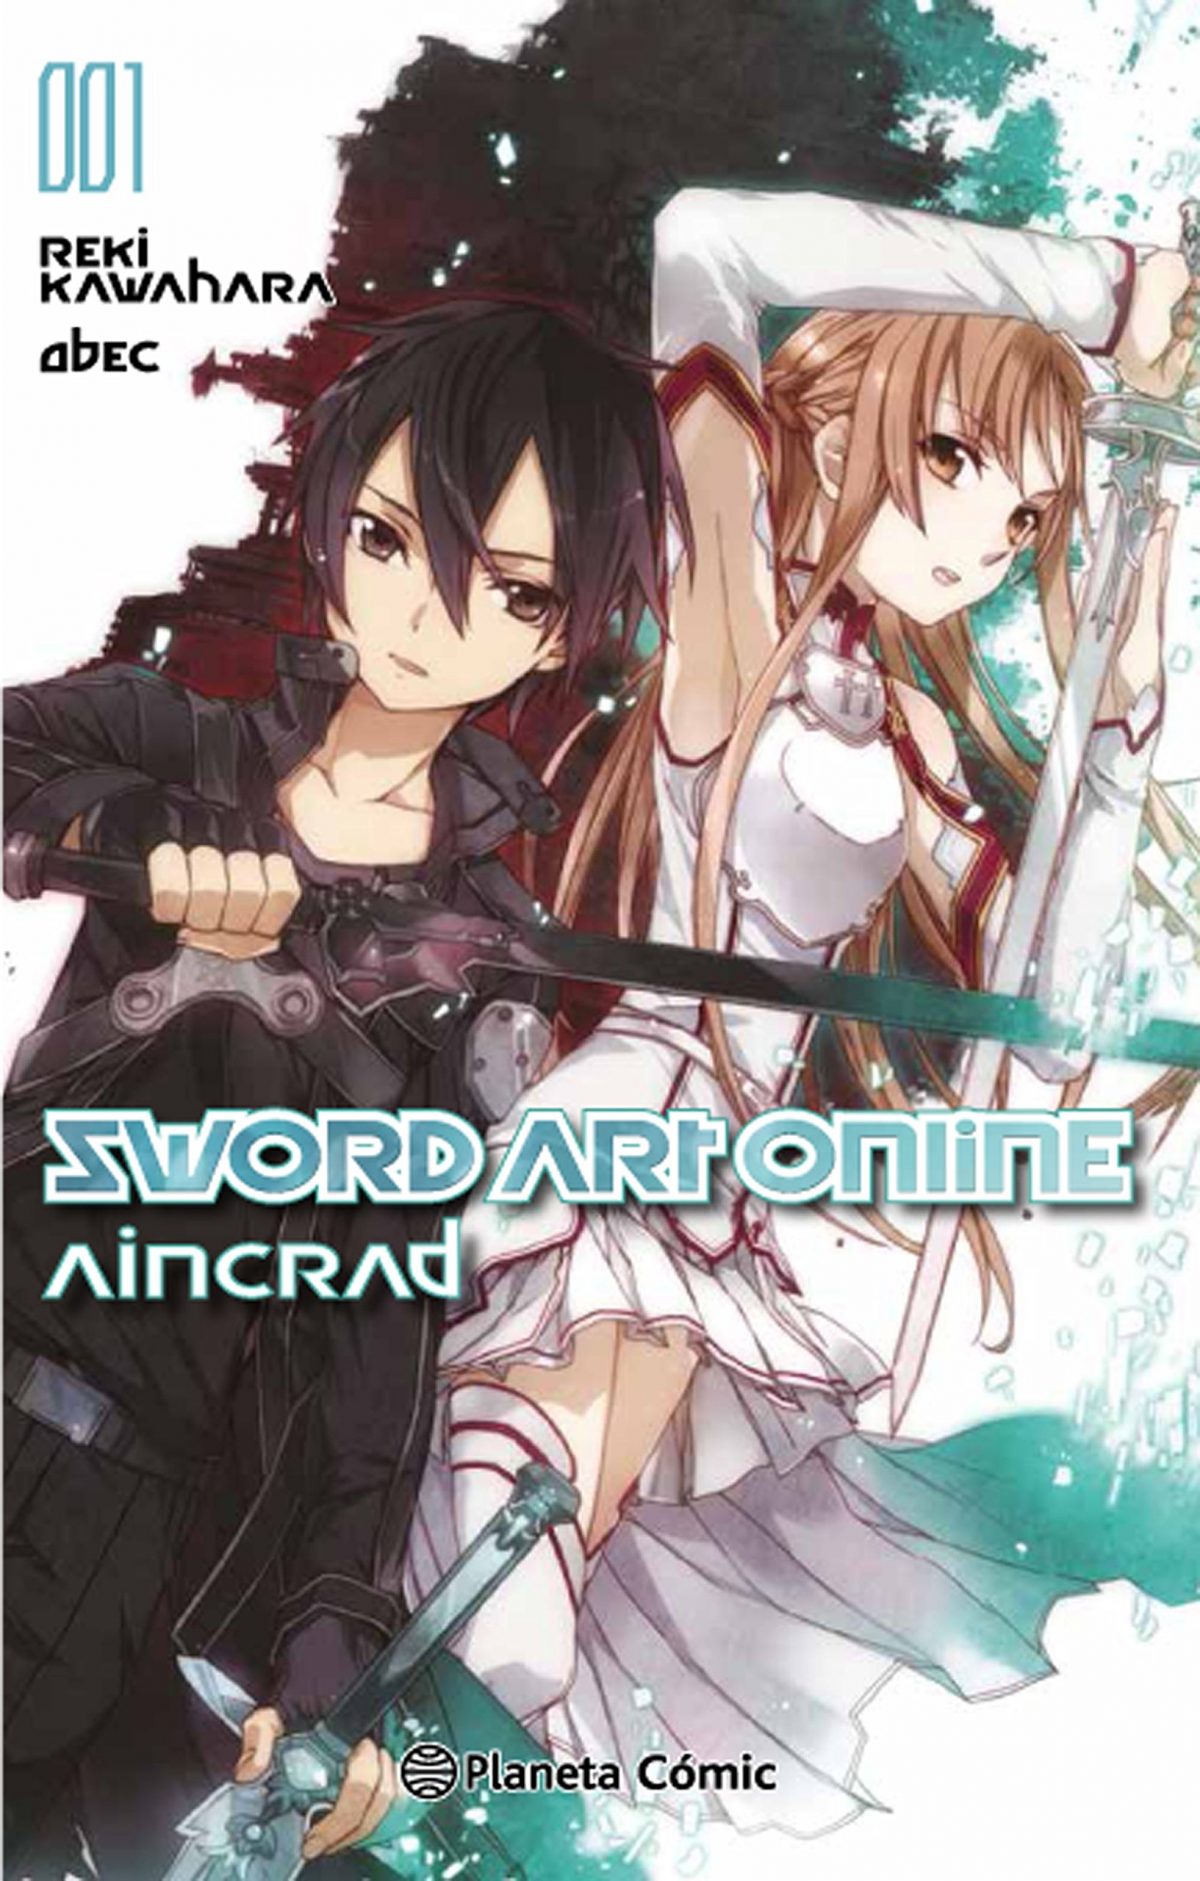 Lo que debes saber sobre las novelas ligeras de Sword Art Online ✅ De qué tratan y el orden de lectura ⭐ Encuentra dónde comprar Sword Art Online en español